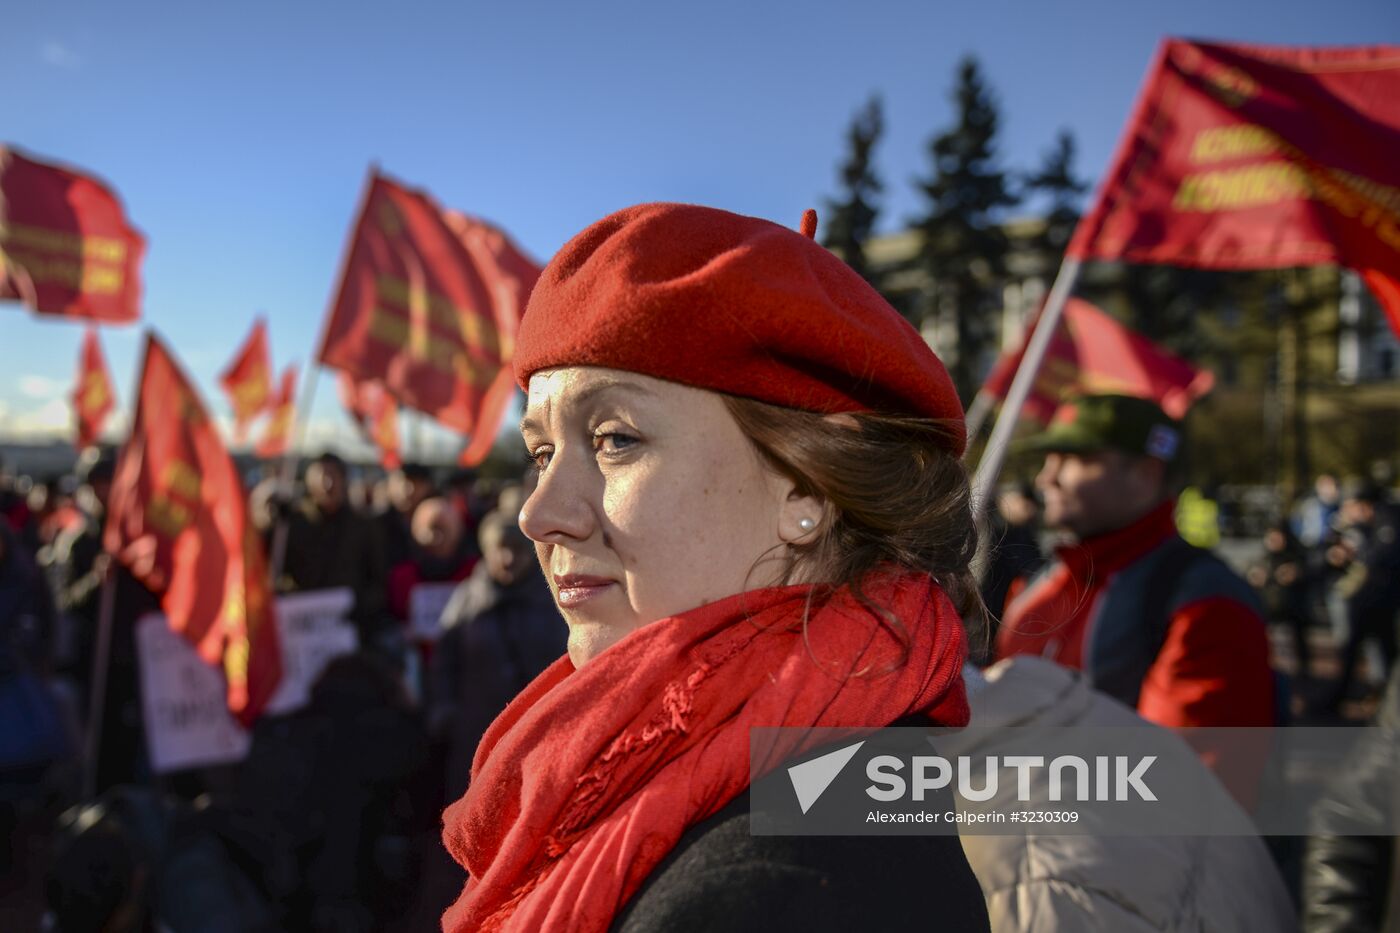 Celebrating 100th anniversary of October Socialist Revolution